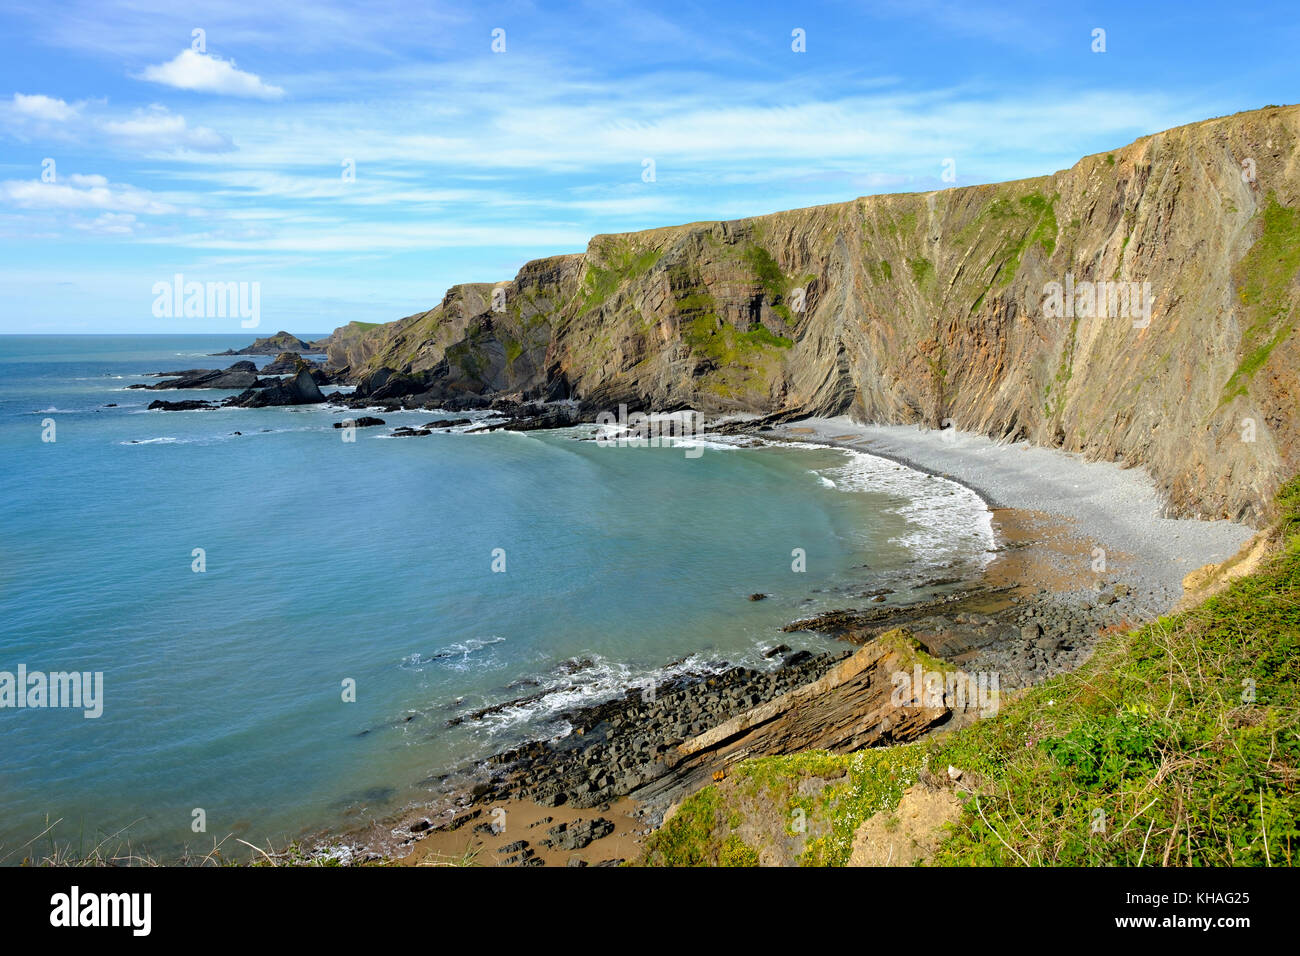 Costa rocosa, Warren playa cerca de hartland quay, Hartland, lundy island, Devon, Inglaterra, Gran Bretaña Foto de stock